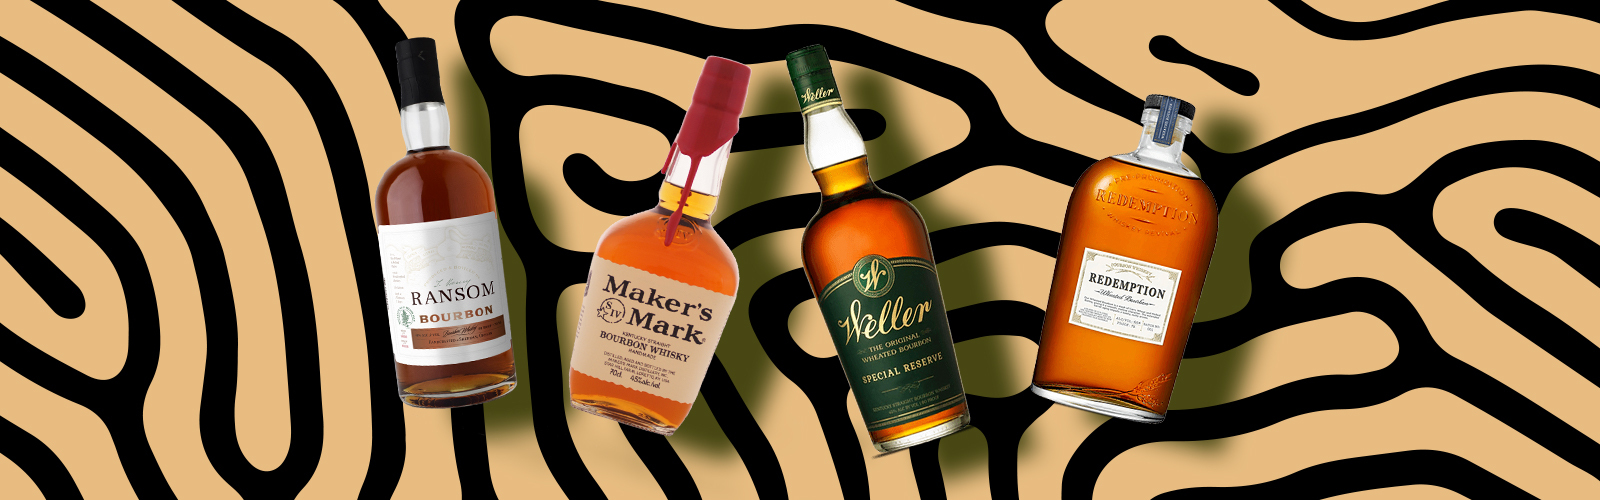 Weller vs. Bourbon